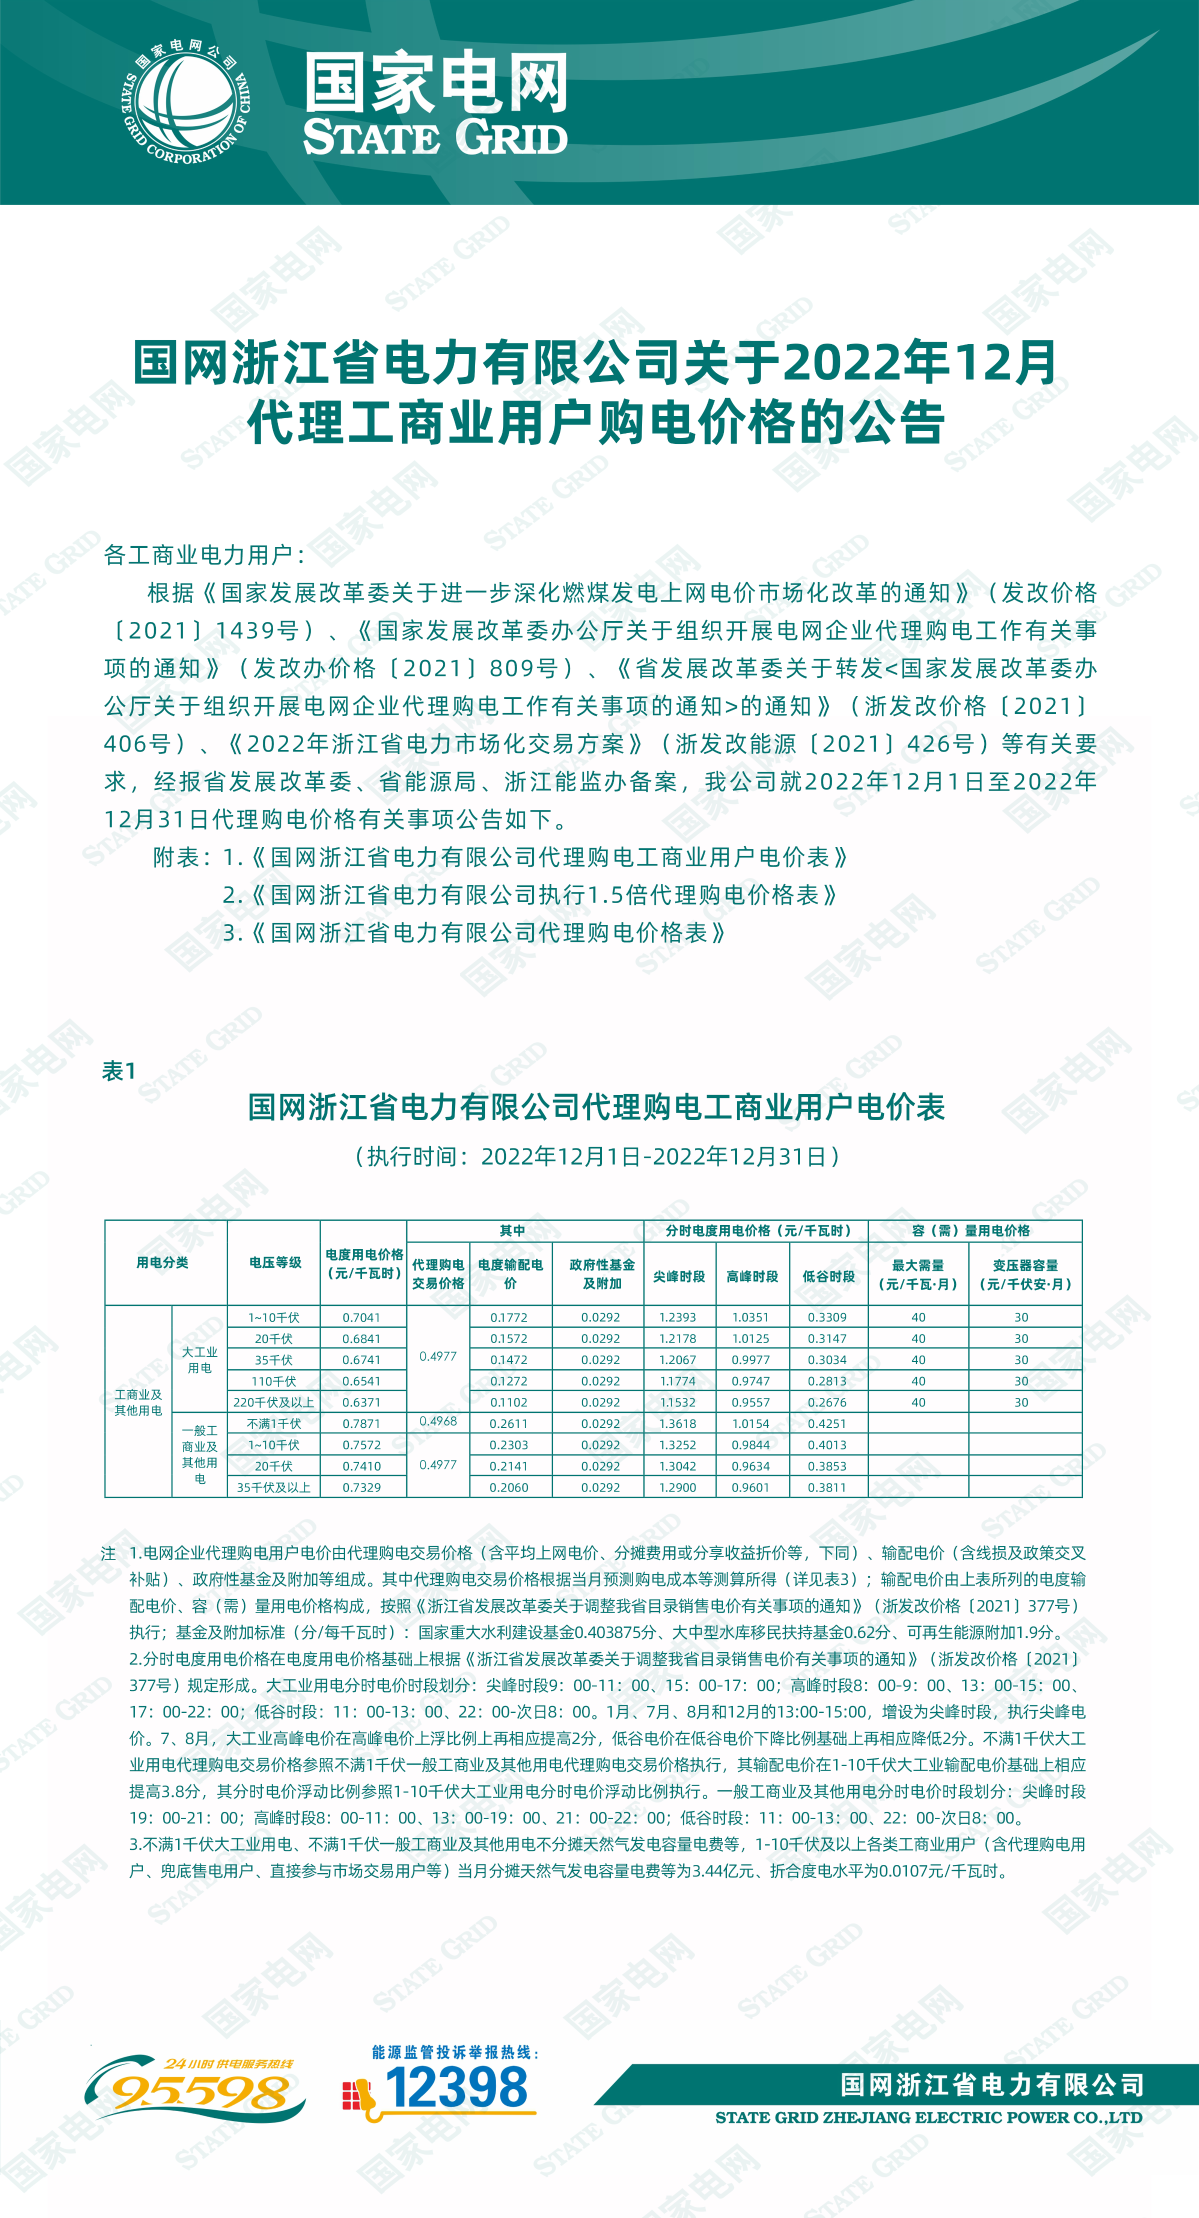 国网浙江省电力有限公司关于2022年12月代理工商业用户购电价格的公告.png